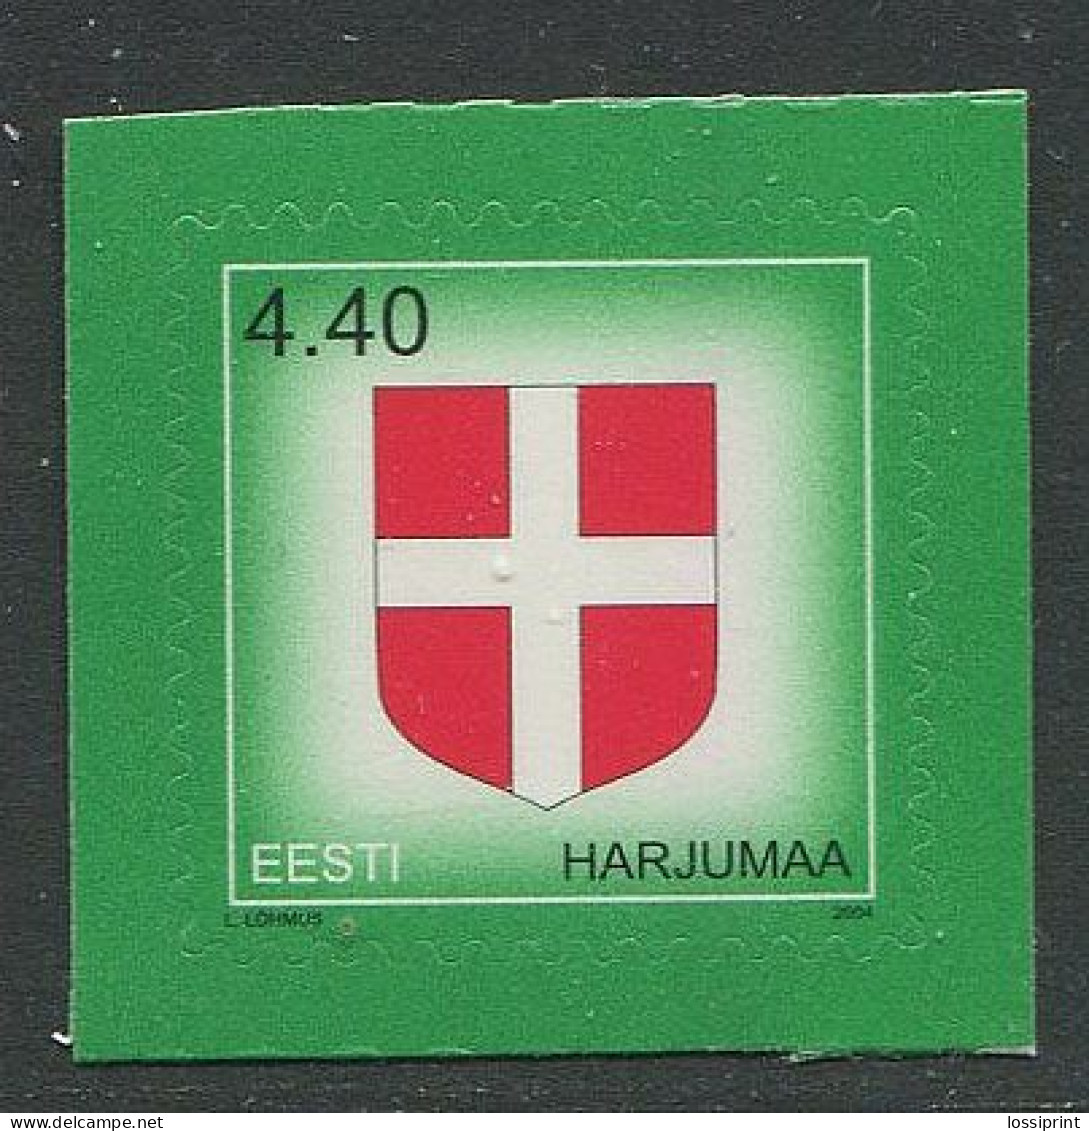 Estonia:Unused Stamp Harjumaa Coat Of Arm, 2004, MNH - Estonie